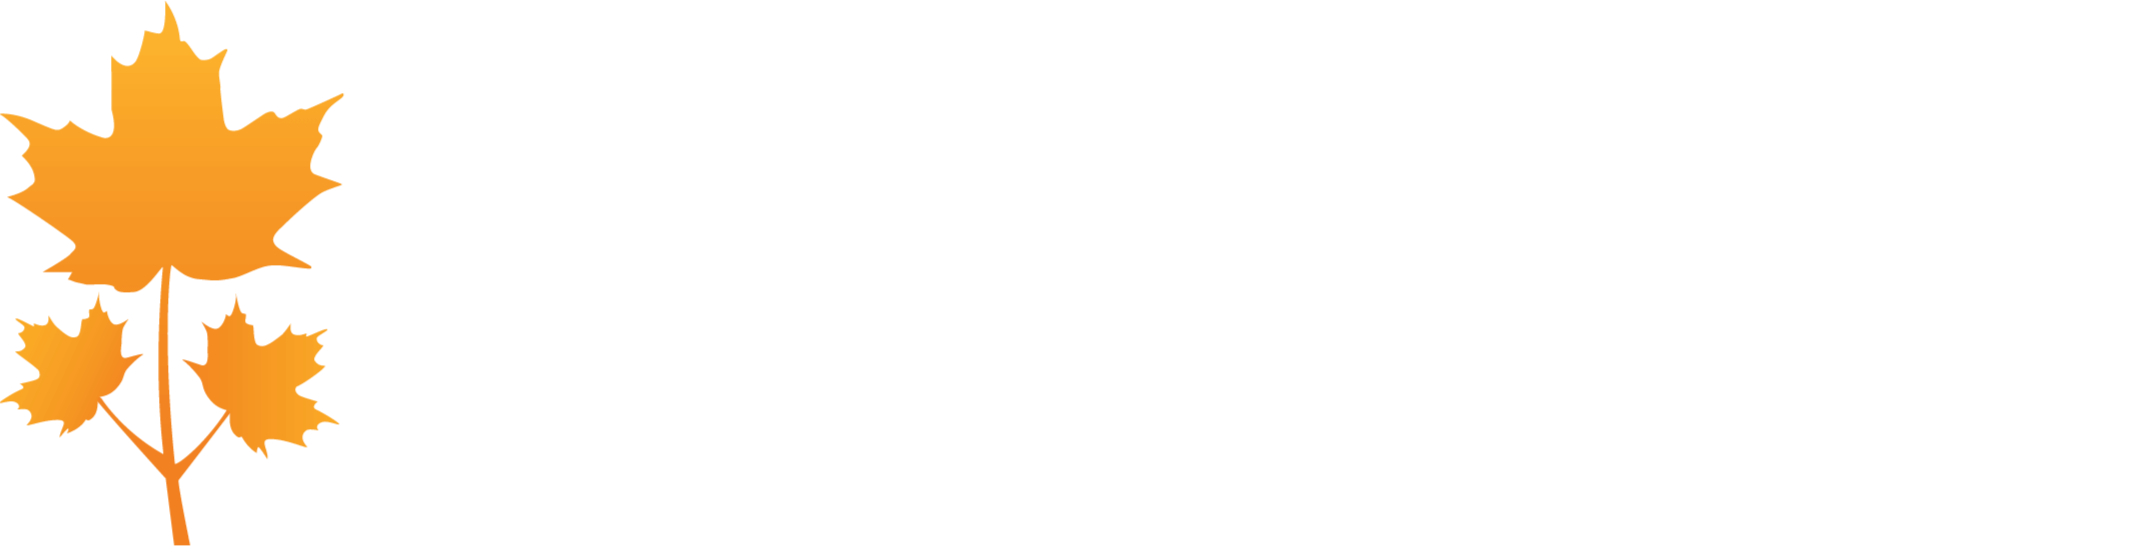 Park Lawn Corporation logo